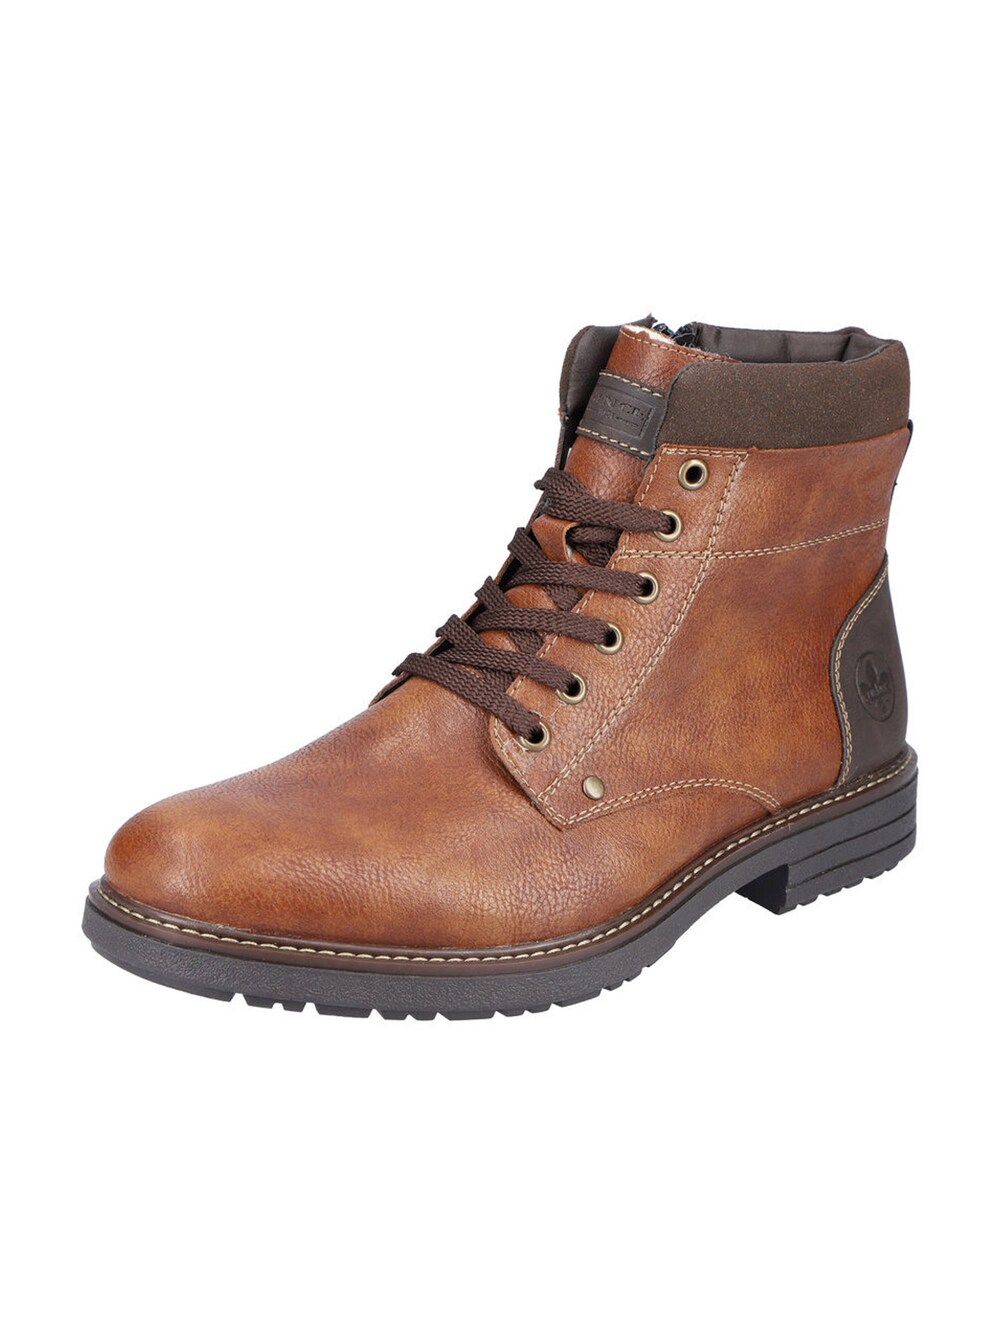 Ботинки на шнуровке Rieker, коричневый/каштановый ботинки на молнии и шнуровке леопардовый принт 37 каштановый